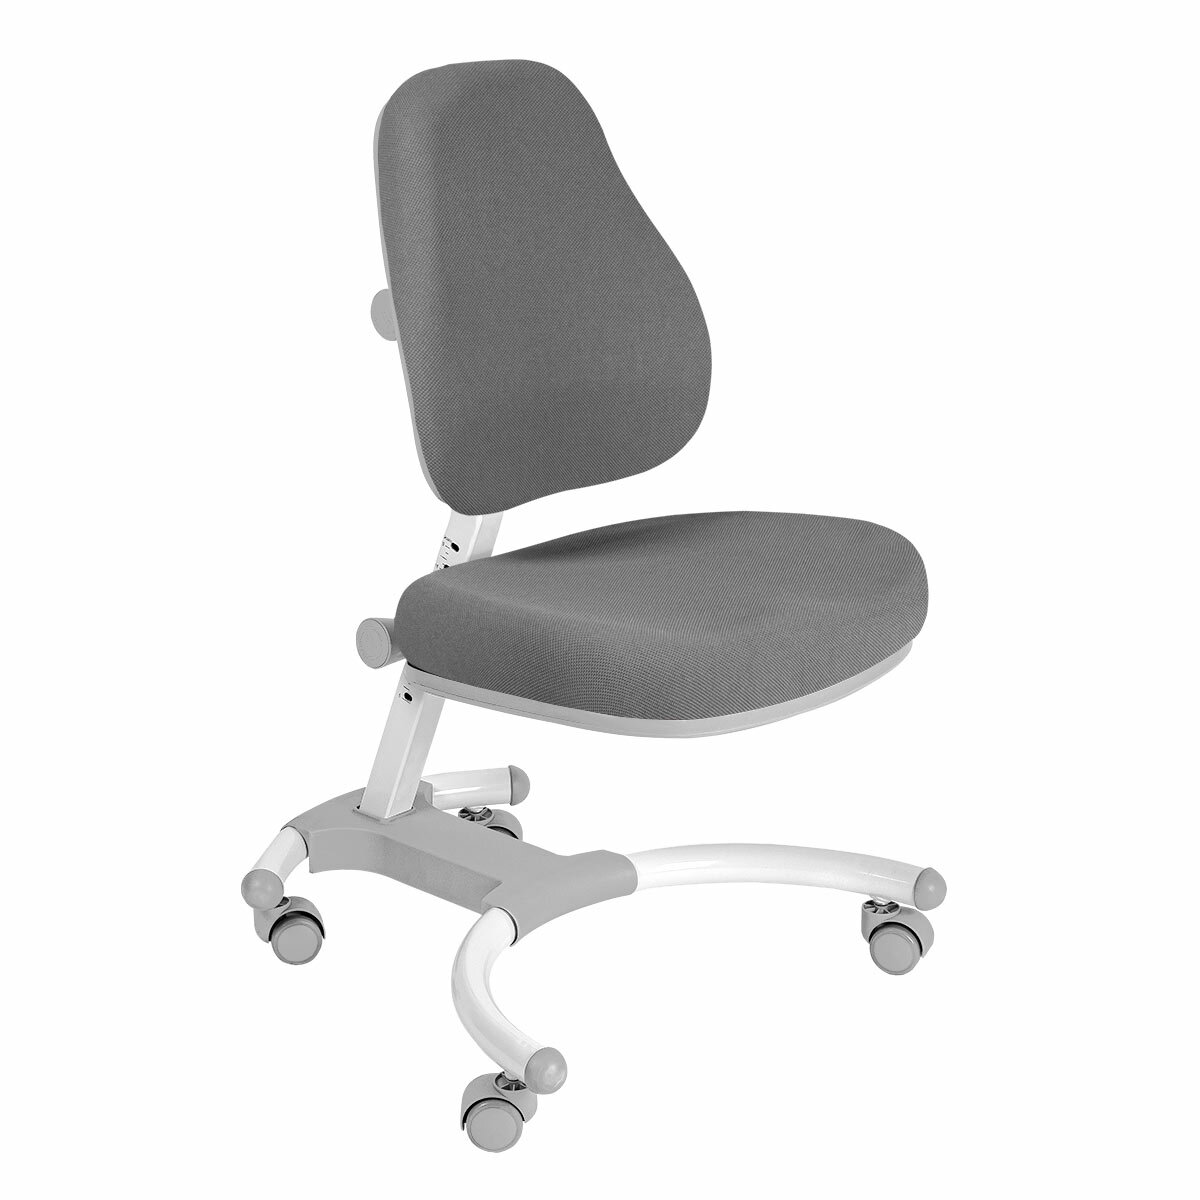 Комплект Anatomica Smart-60 Lux парта + кресло + надстройка + органайзер + ящик белый/серый с серым креслом Figra - фотография № 3